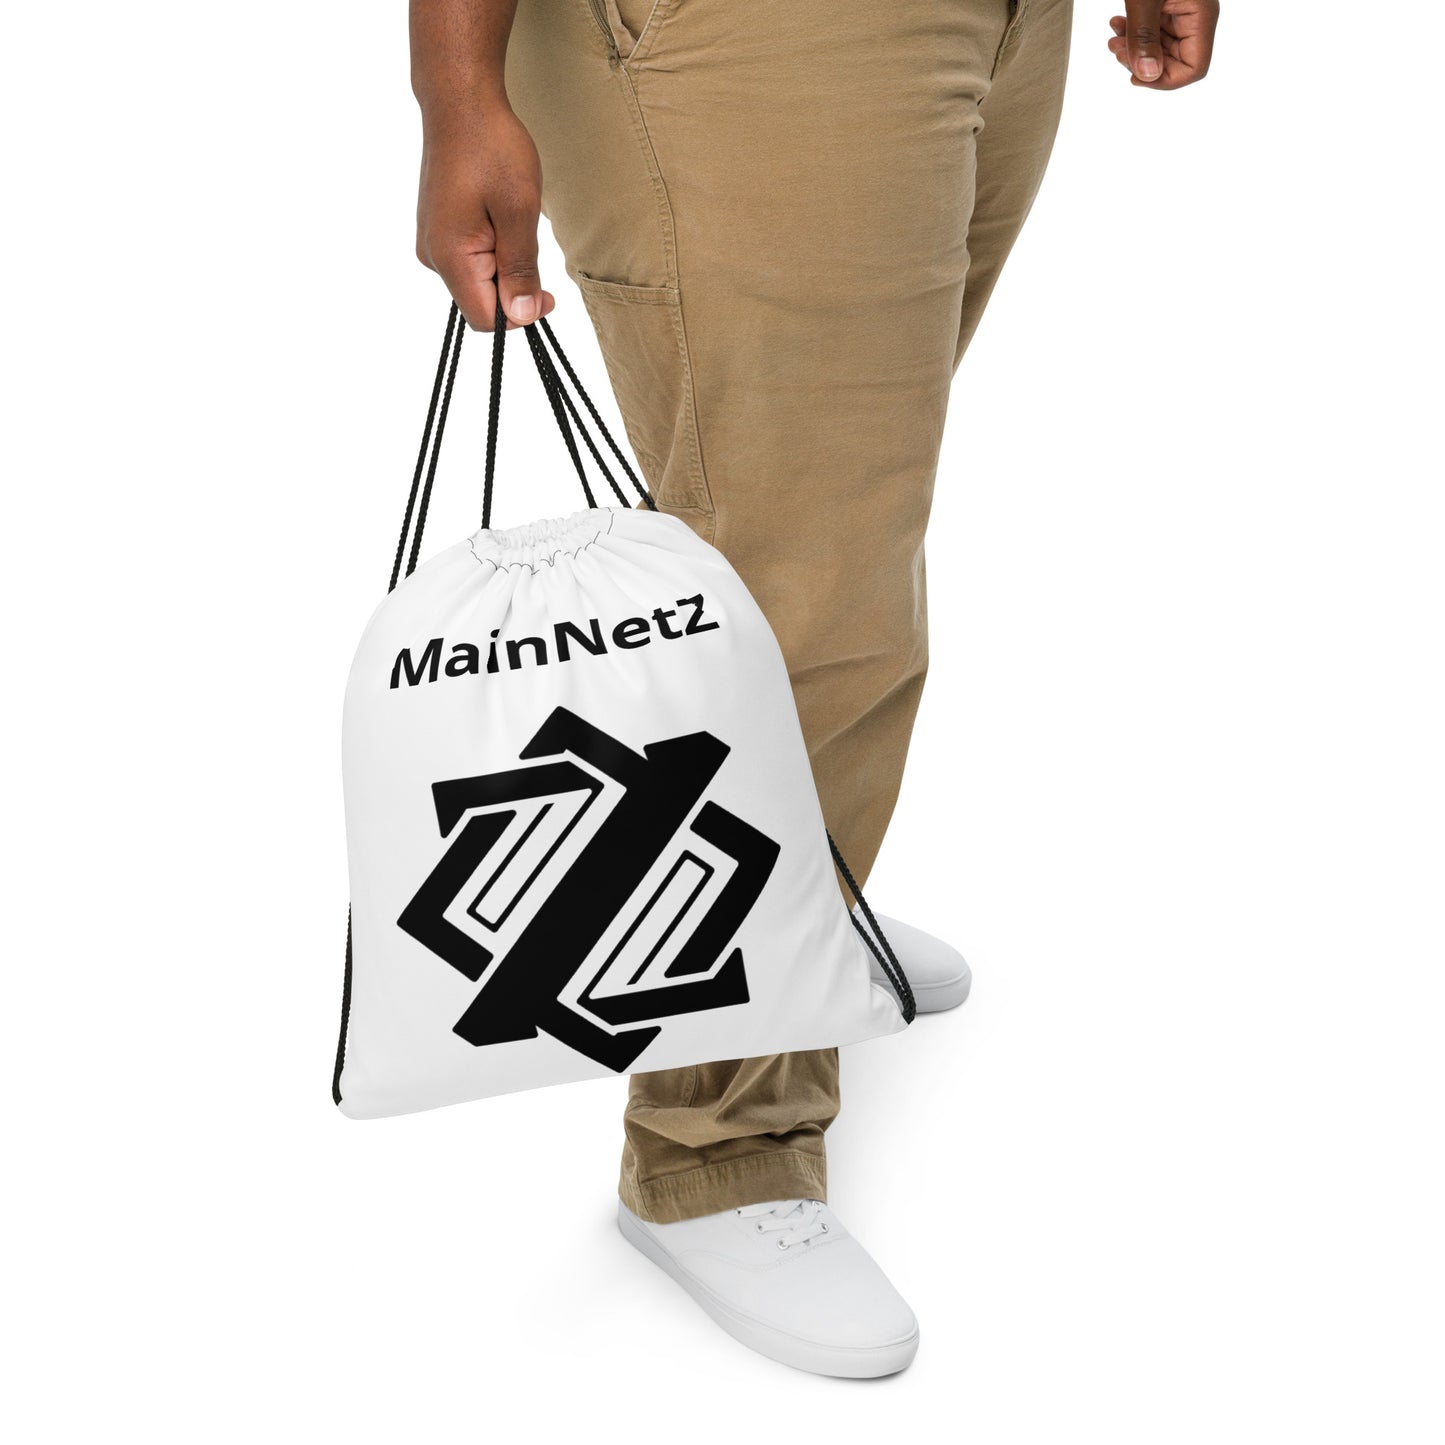 MainNetZ Drawstring bag